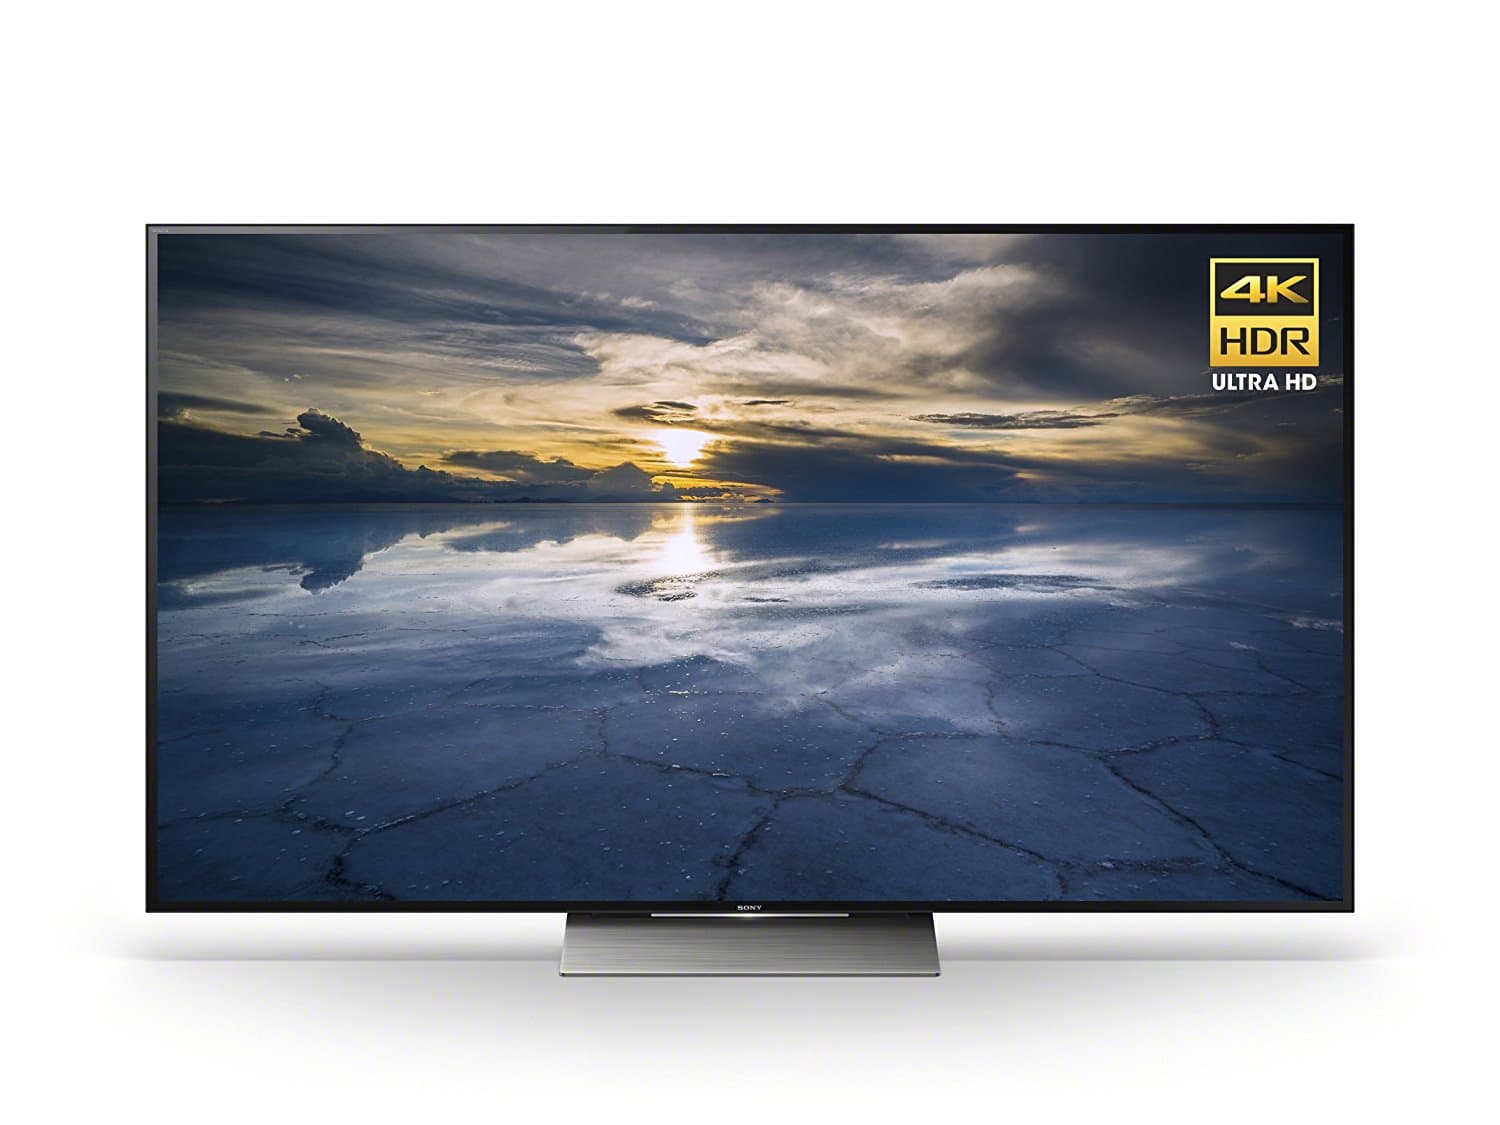 Sony XBR75X940D 75_Inch 4K Ultra HD Smart TV _2016 Model_